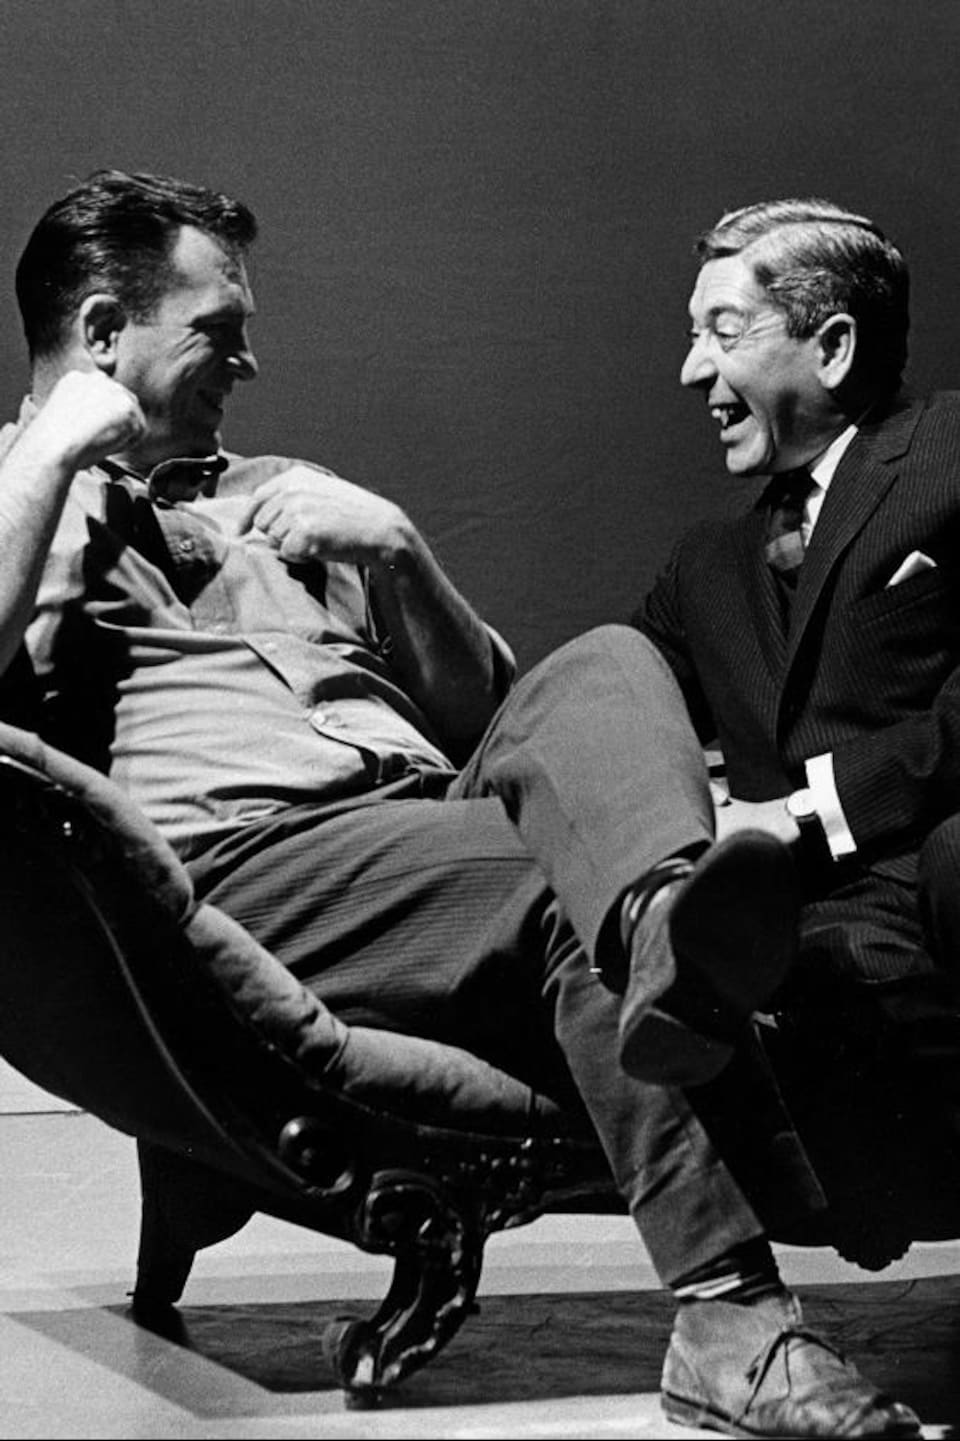 Dans un studio de télévision, l'écrivain américain Jack Kerouac et l'animateur Fernand Seguin, riant, sont assis sur une causeuse.